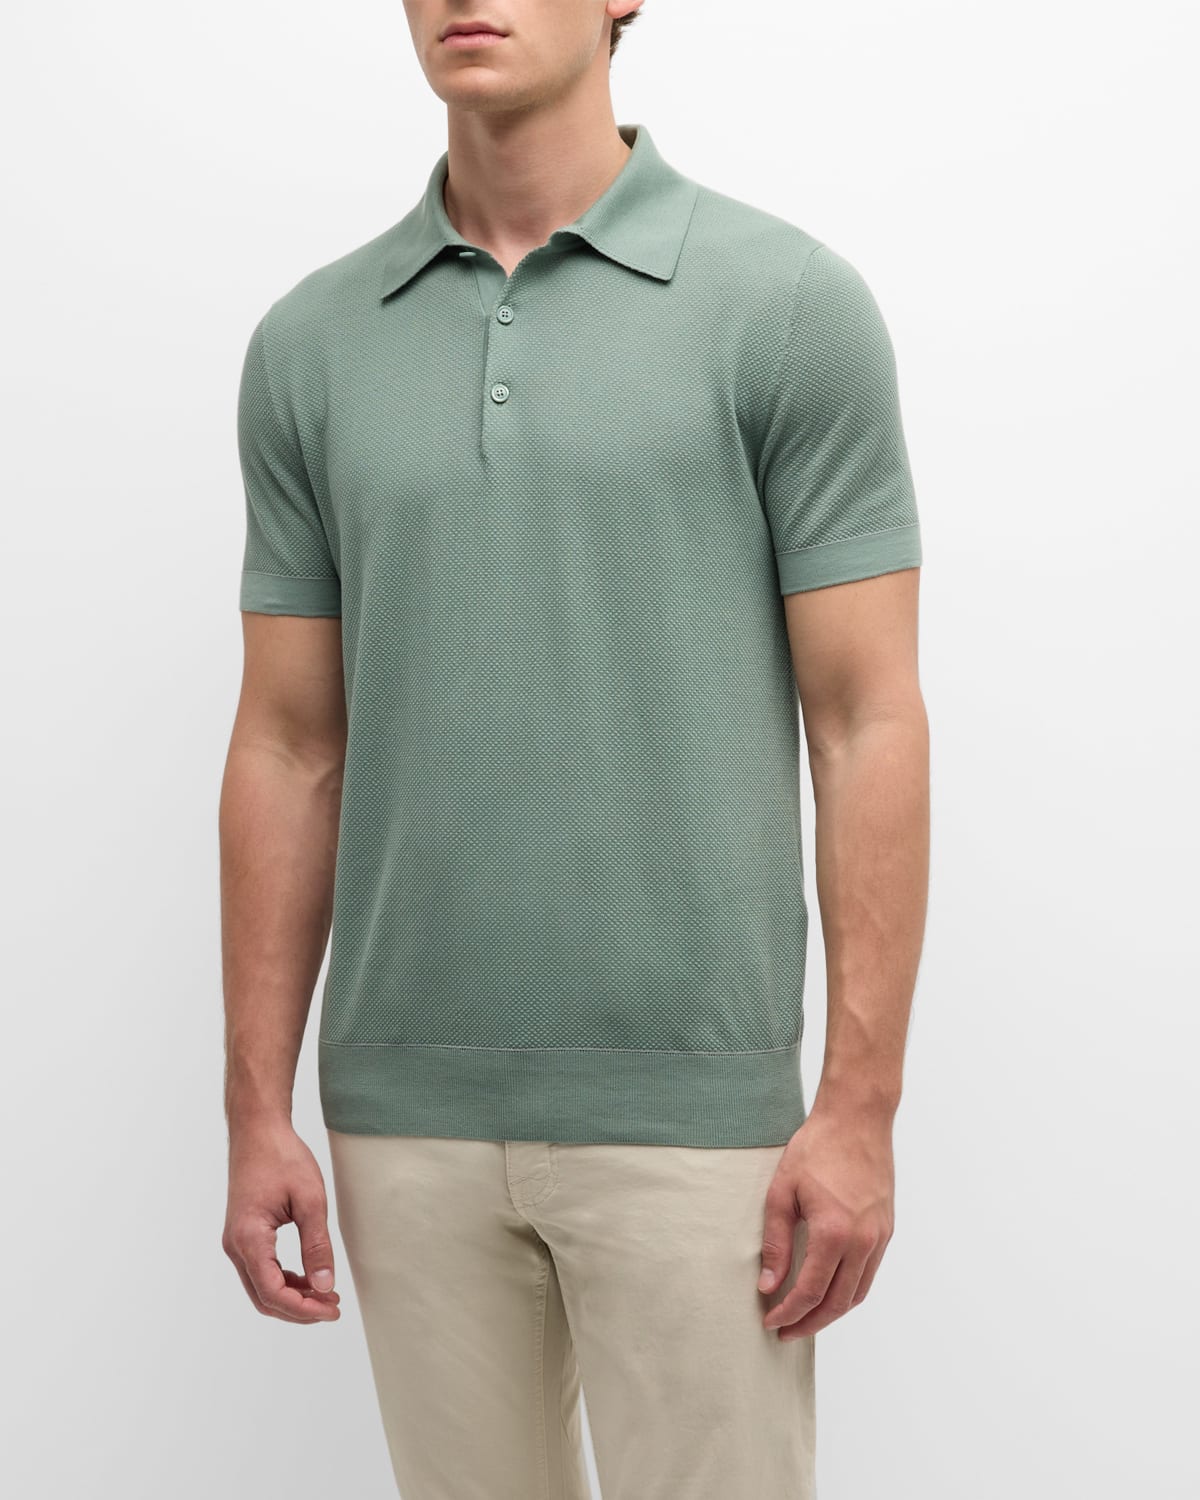 Men's Sea Island Polo Shirt